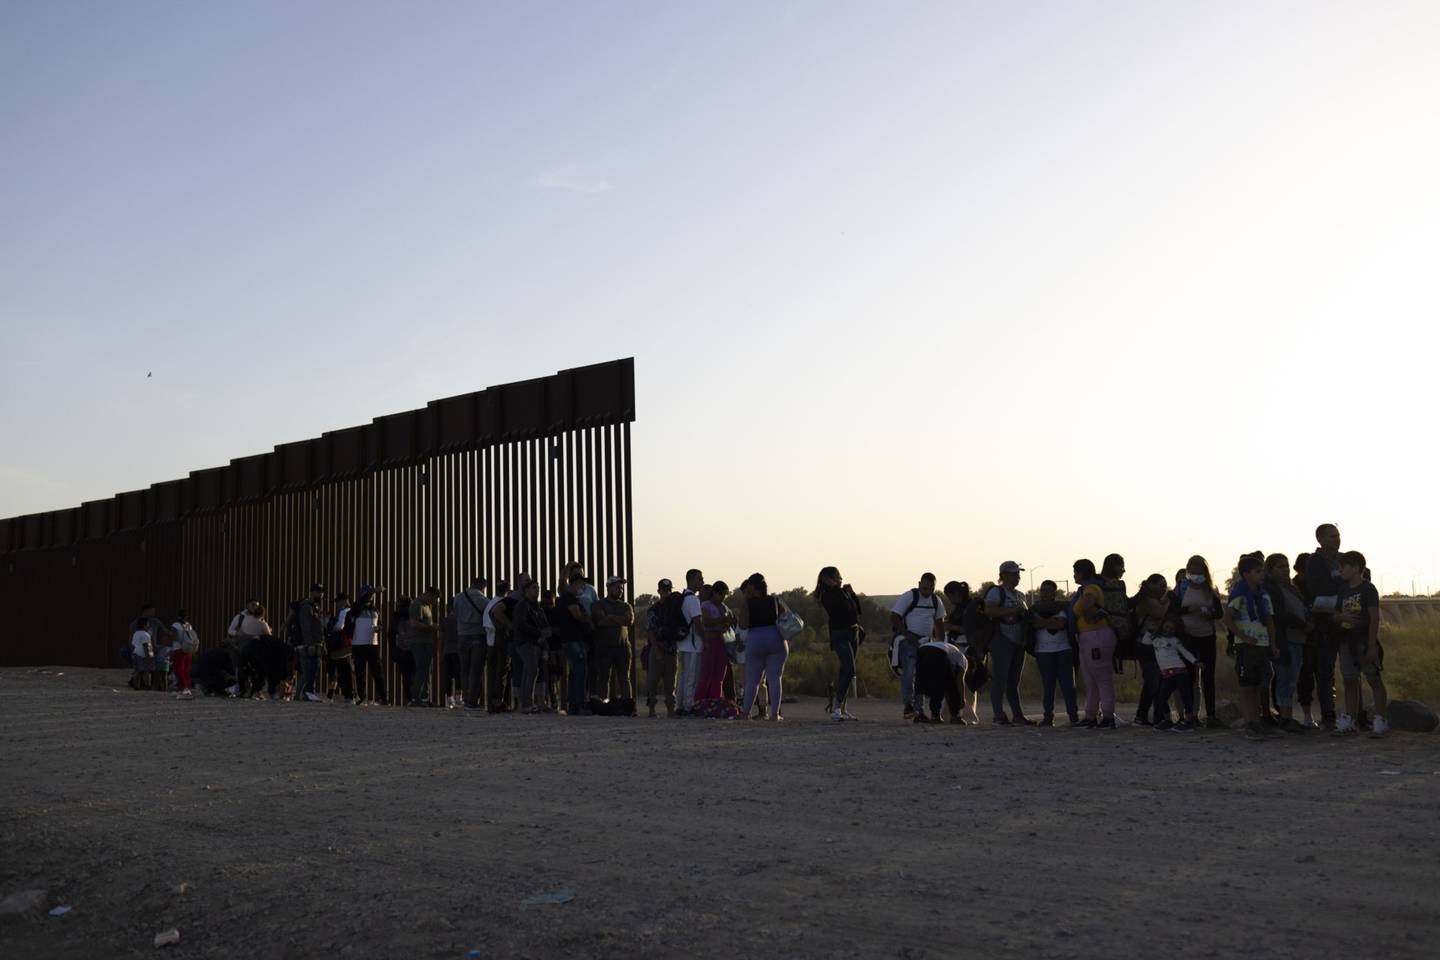 Migrantes en busca de asilo esperan a ser procesados por agentes de la Patrulla Fronteriza de Estados Unidos tras cruzar la frontera entre México y Estados Unidos en Yuma, Arizona, Estados Unidos.dfd